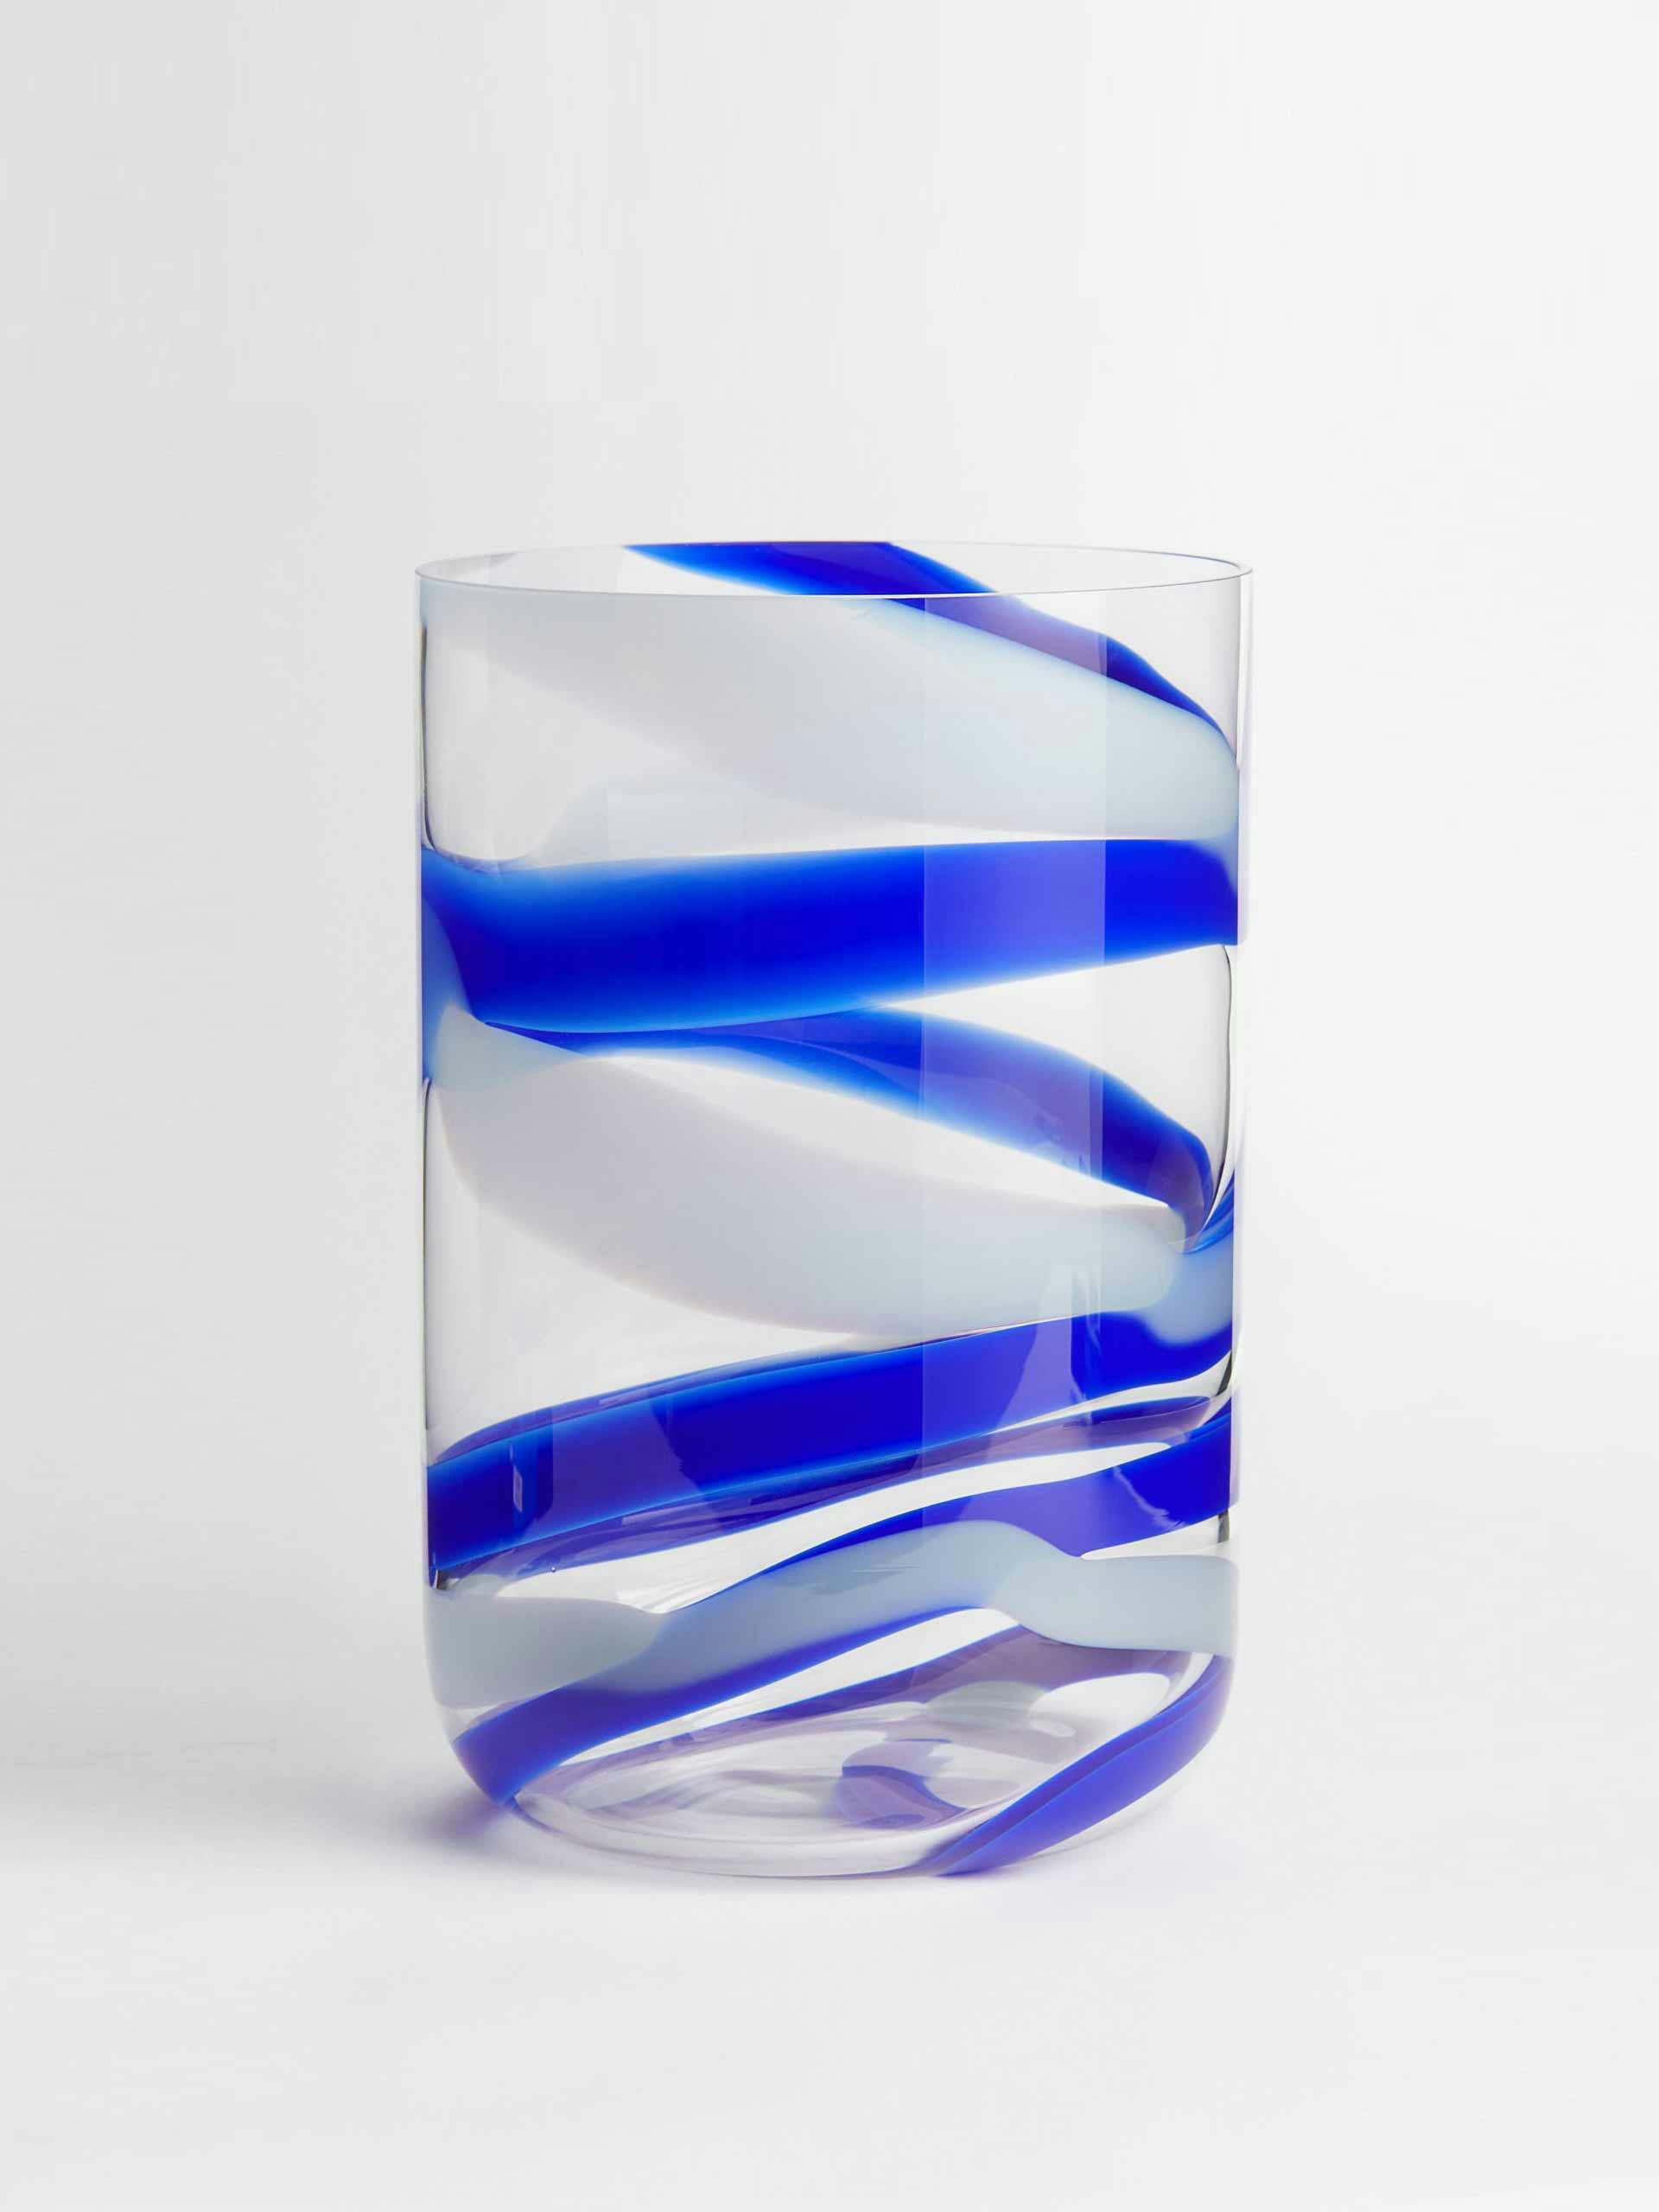 Blue swirl glass vase